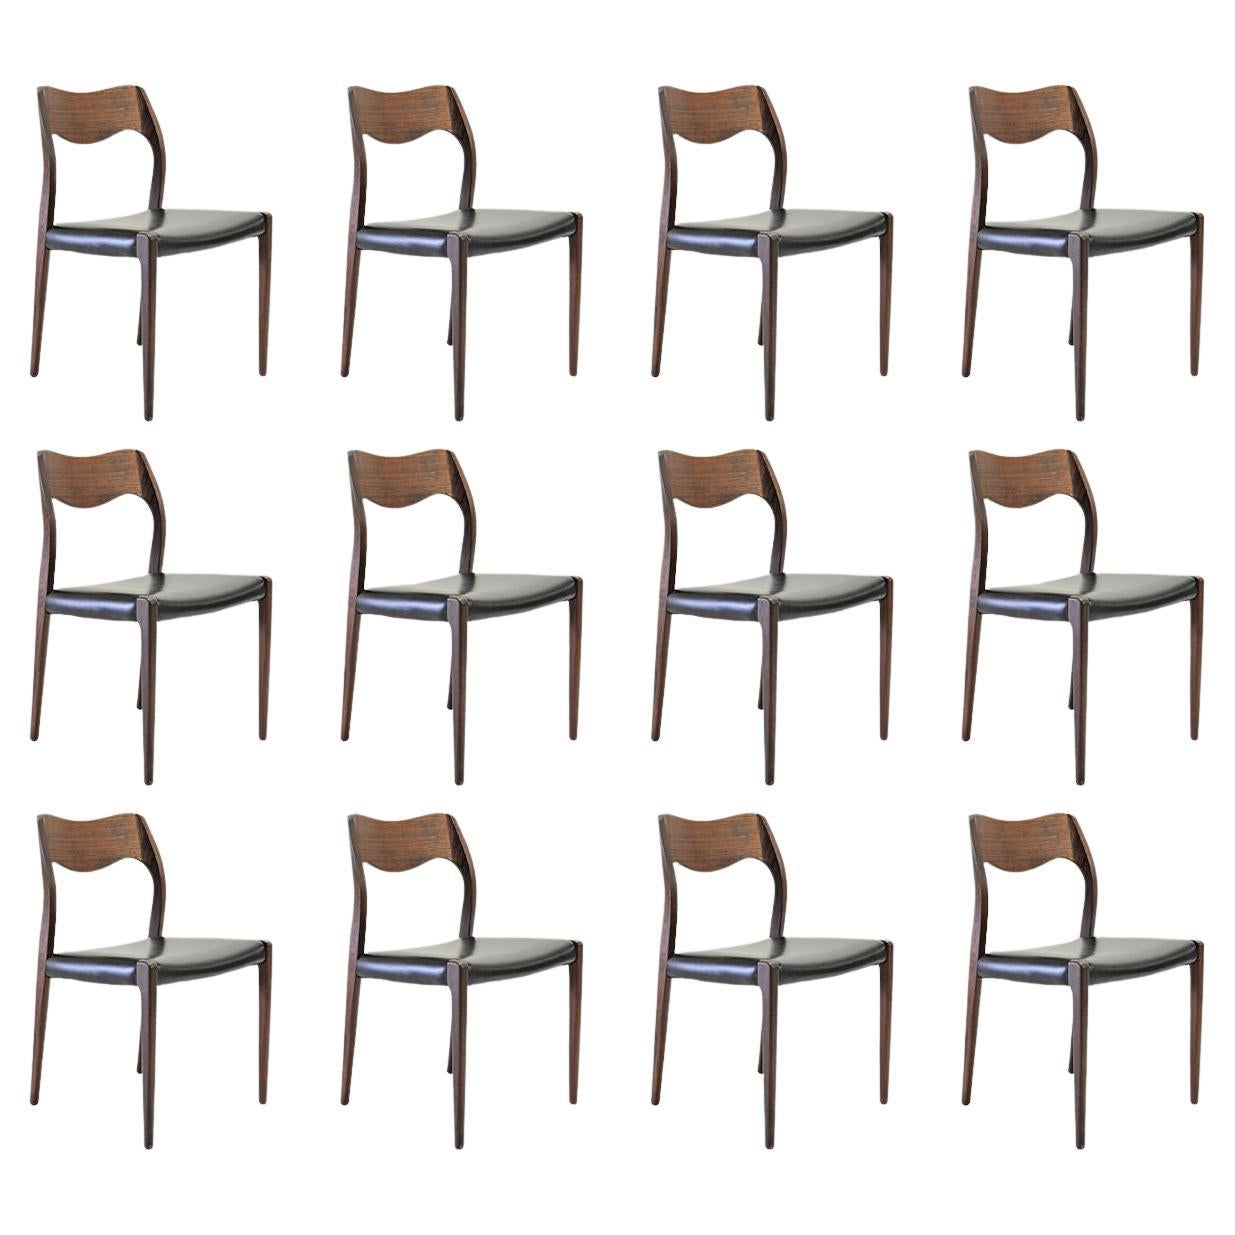 Douze chaises de salle à manger en teck restaurées Niels Otto Mller des années 1960, tapissées sur mesure